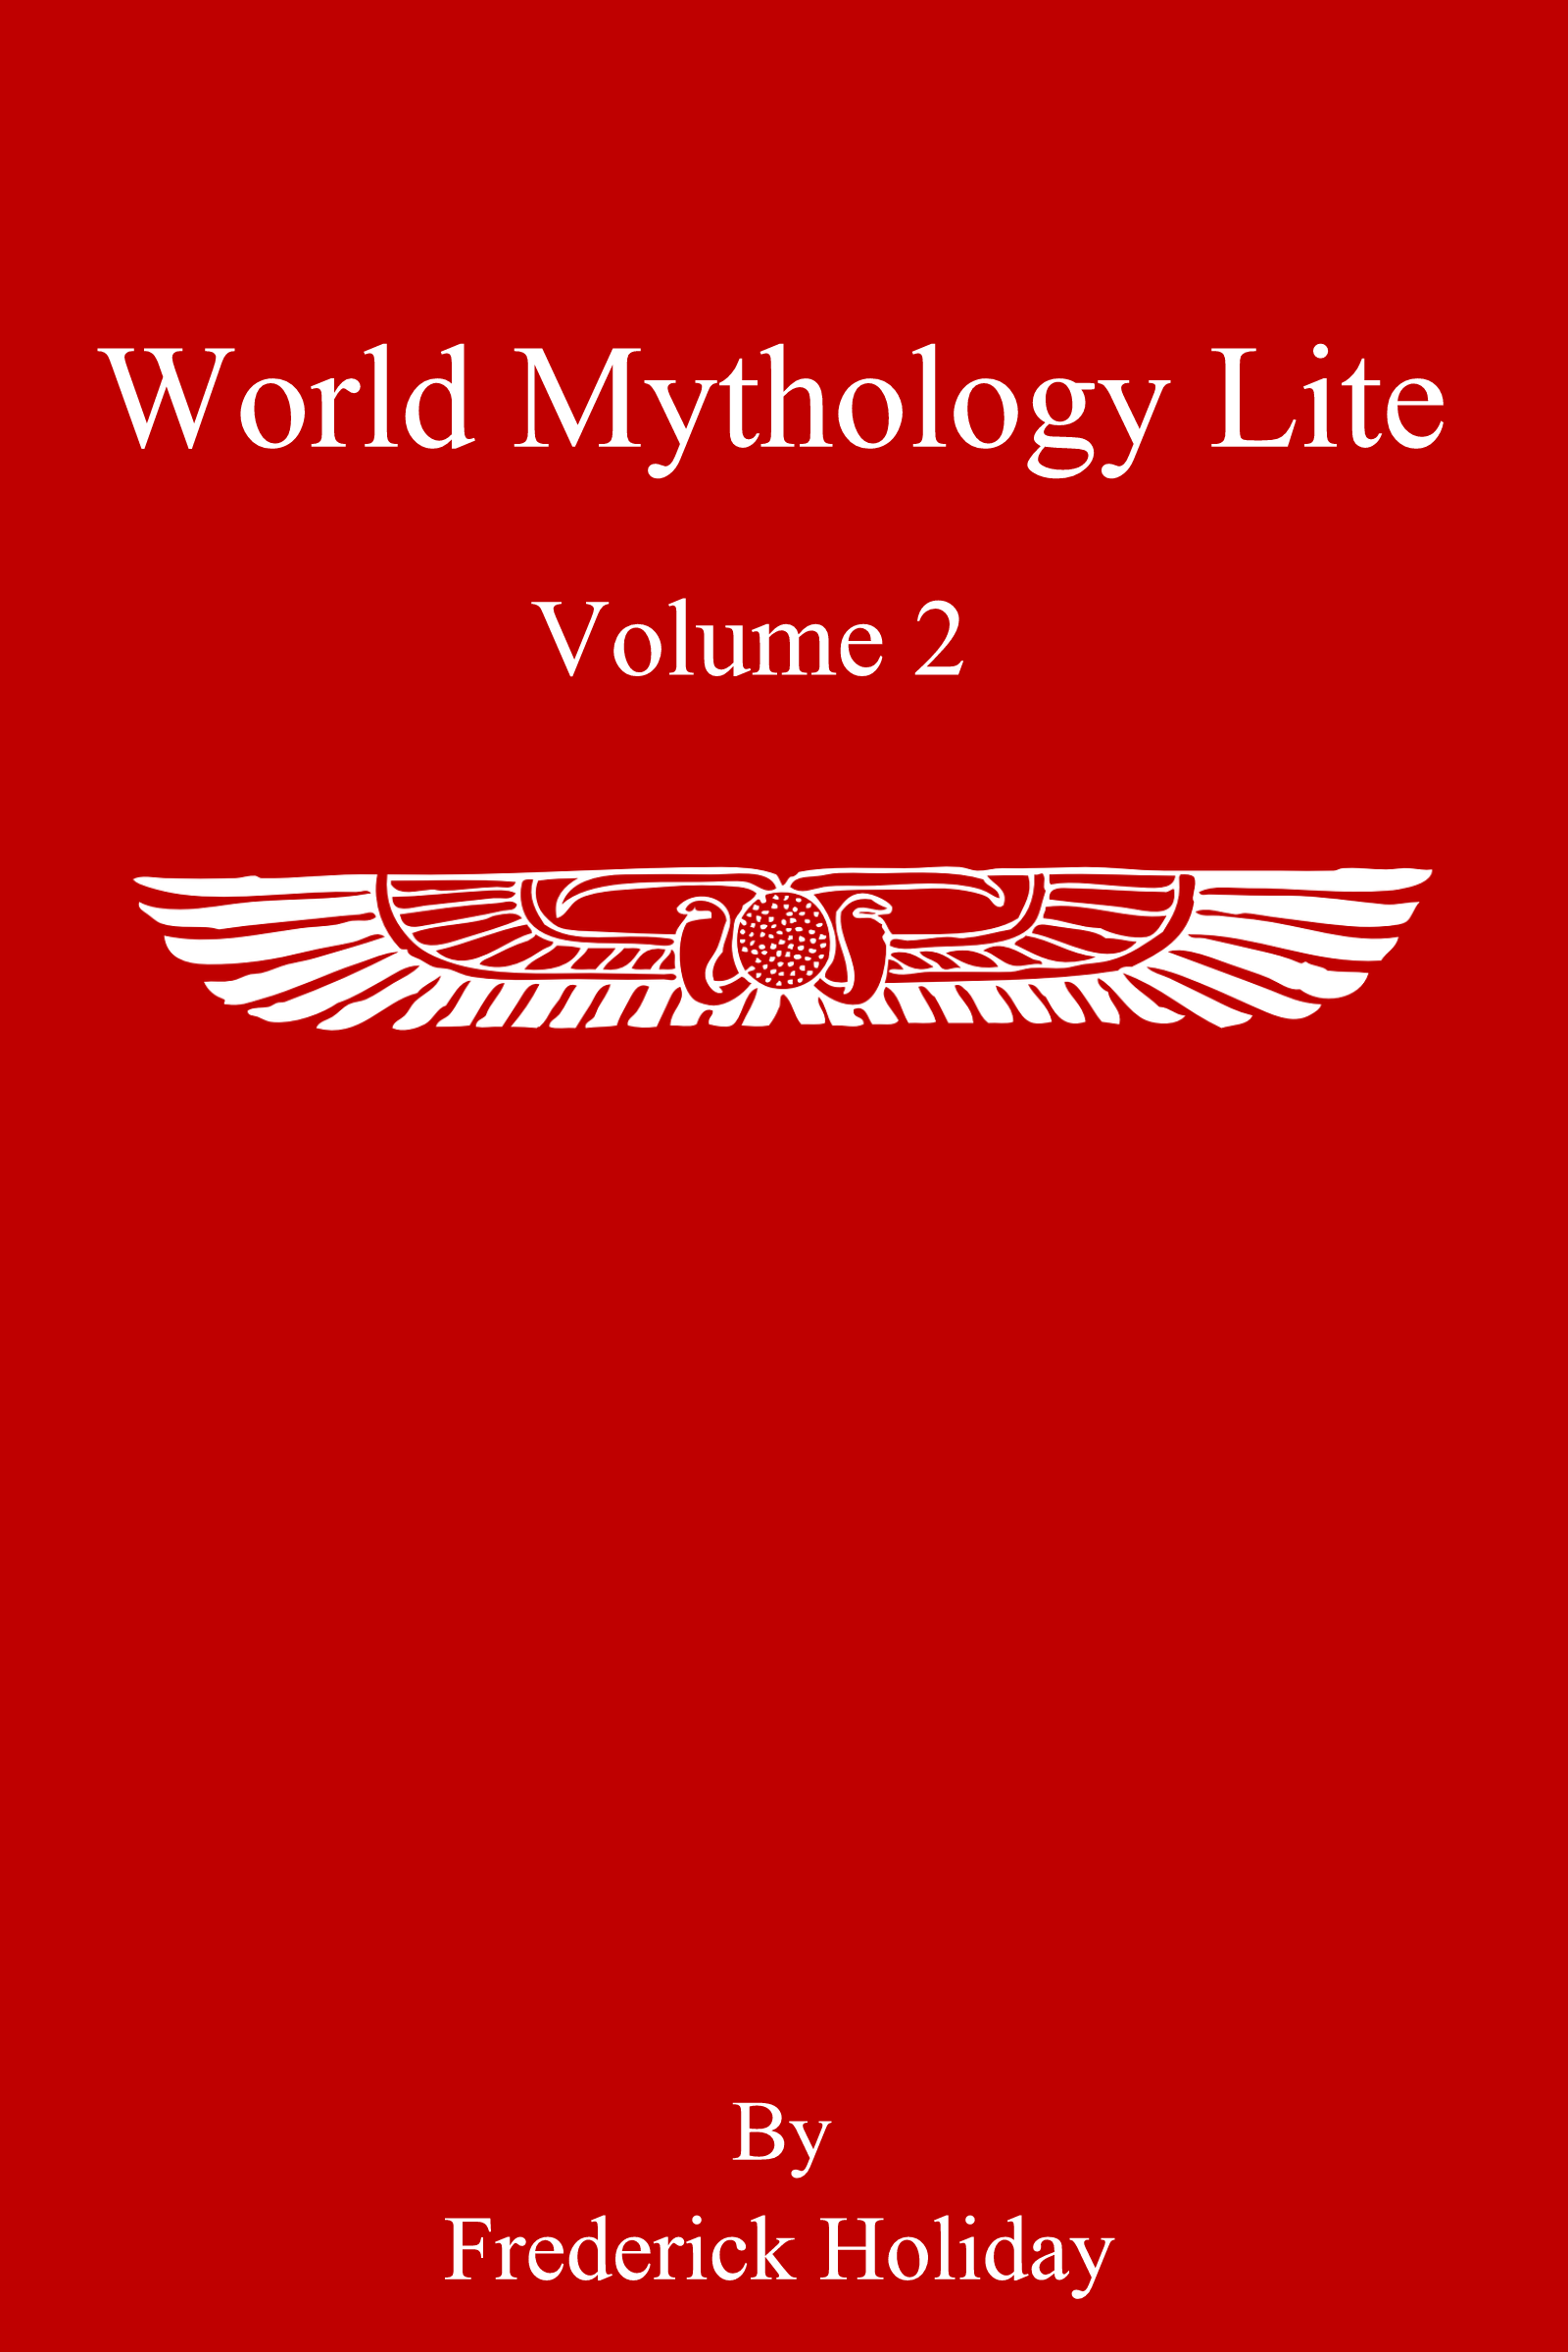 WorldMythologyLiteVol2-Red